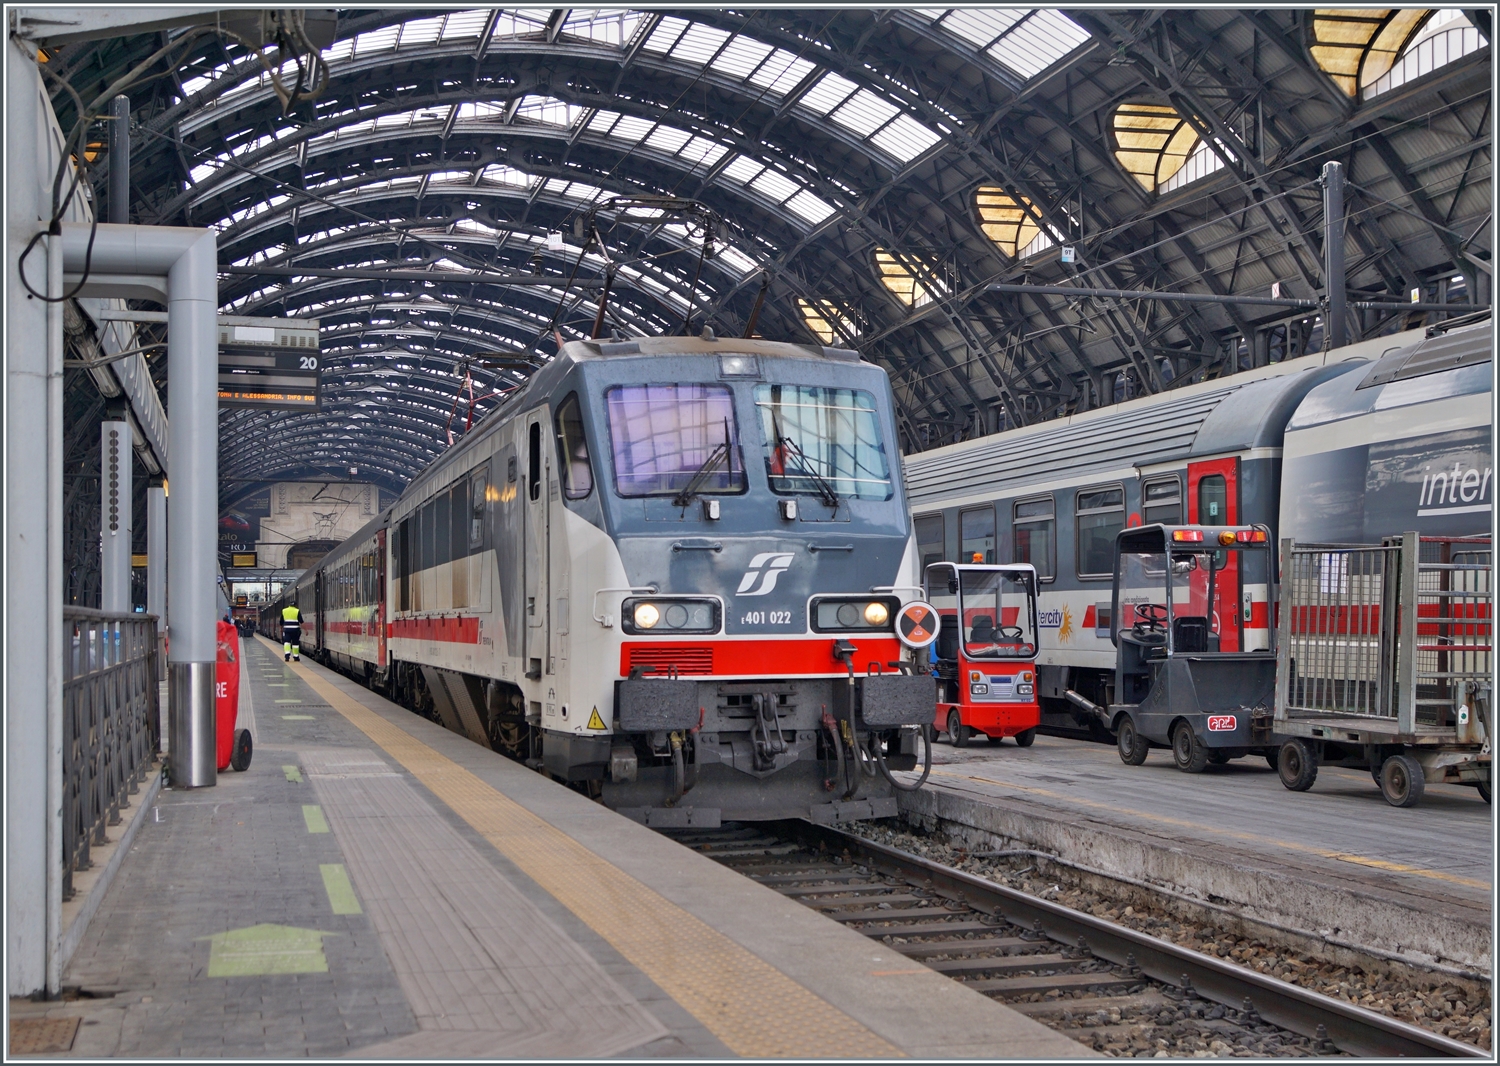 Ich habe noch ein Bild der FS Trenitalia E 401 gefunden: mit einen Intercity wartet die FS Trenitalia E 401 022 in Milano Centrale auf die Abfahrt.

8. November 2022